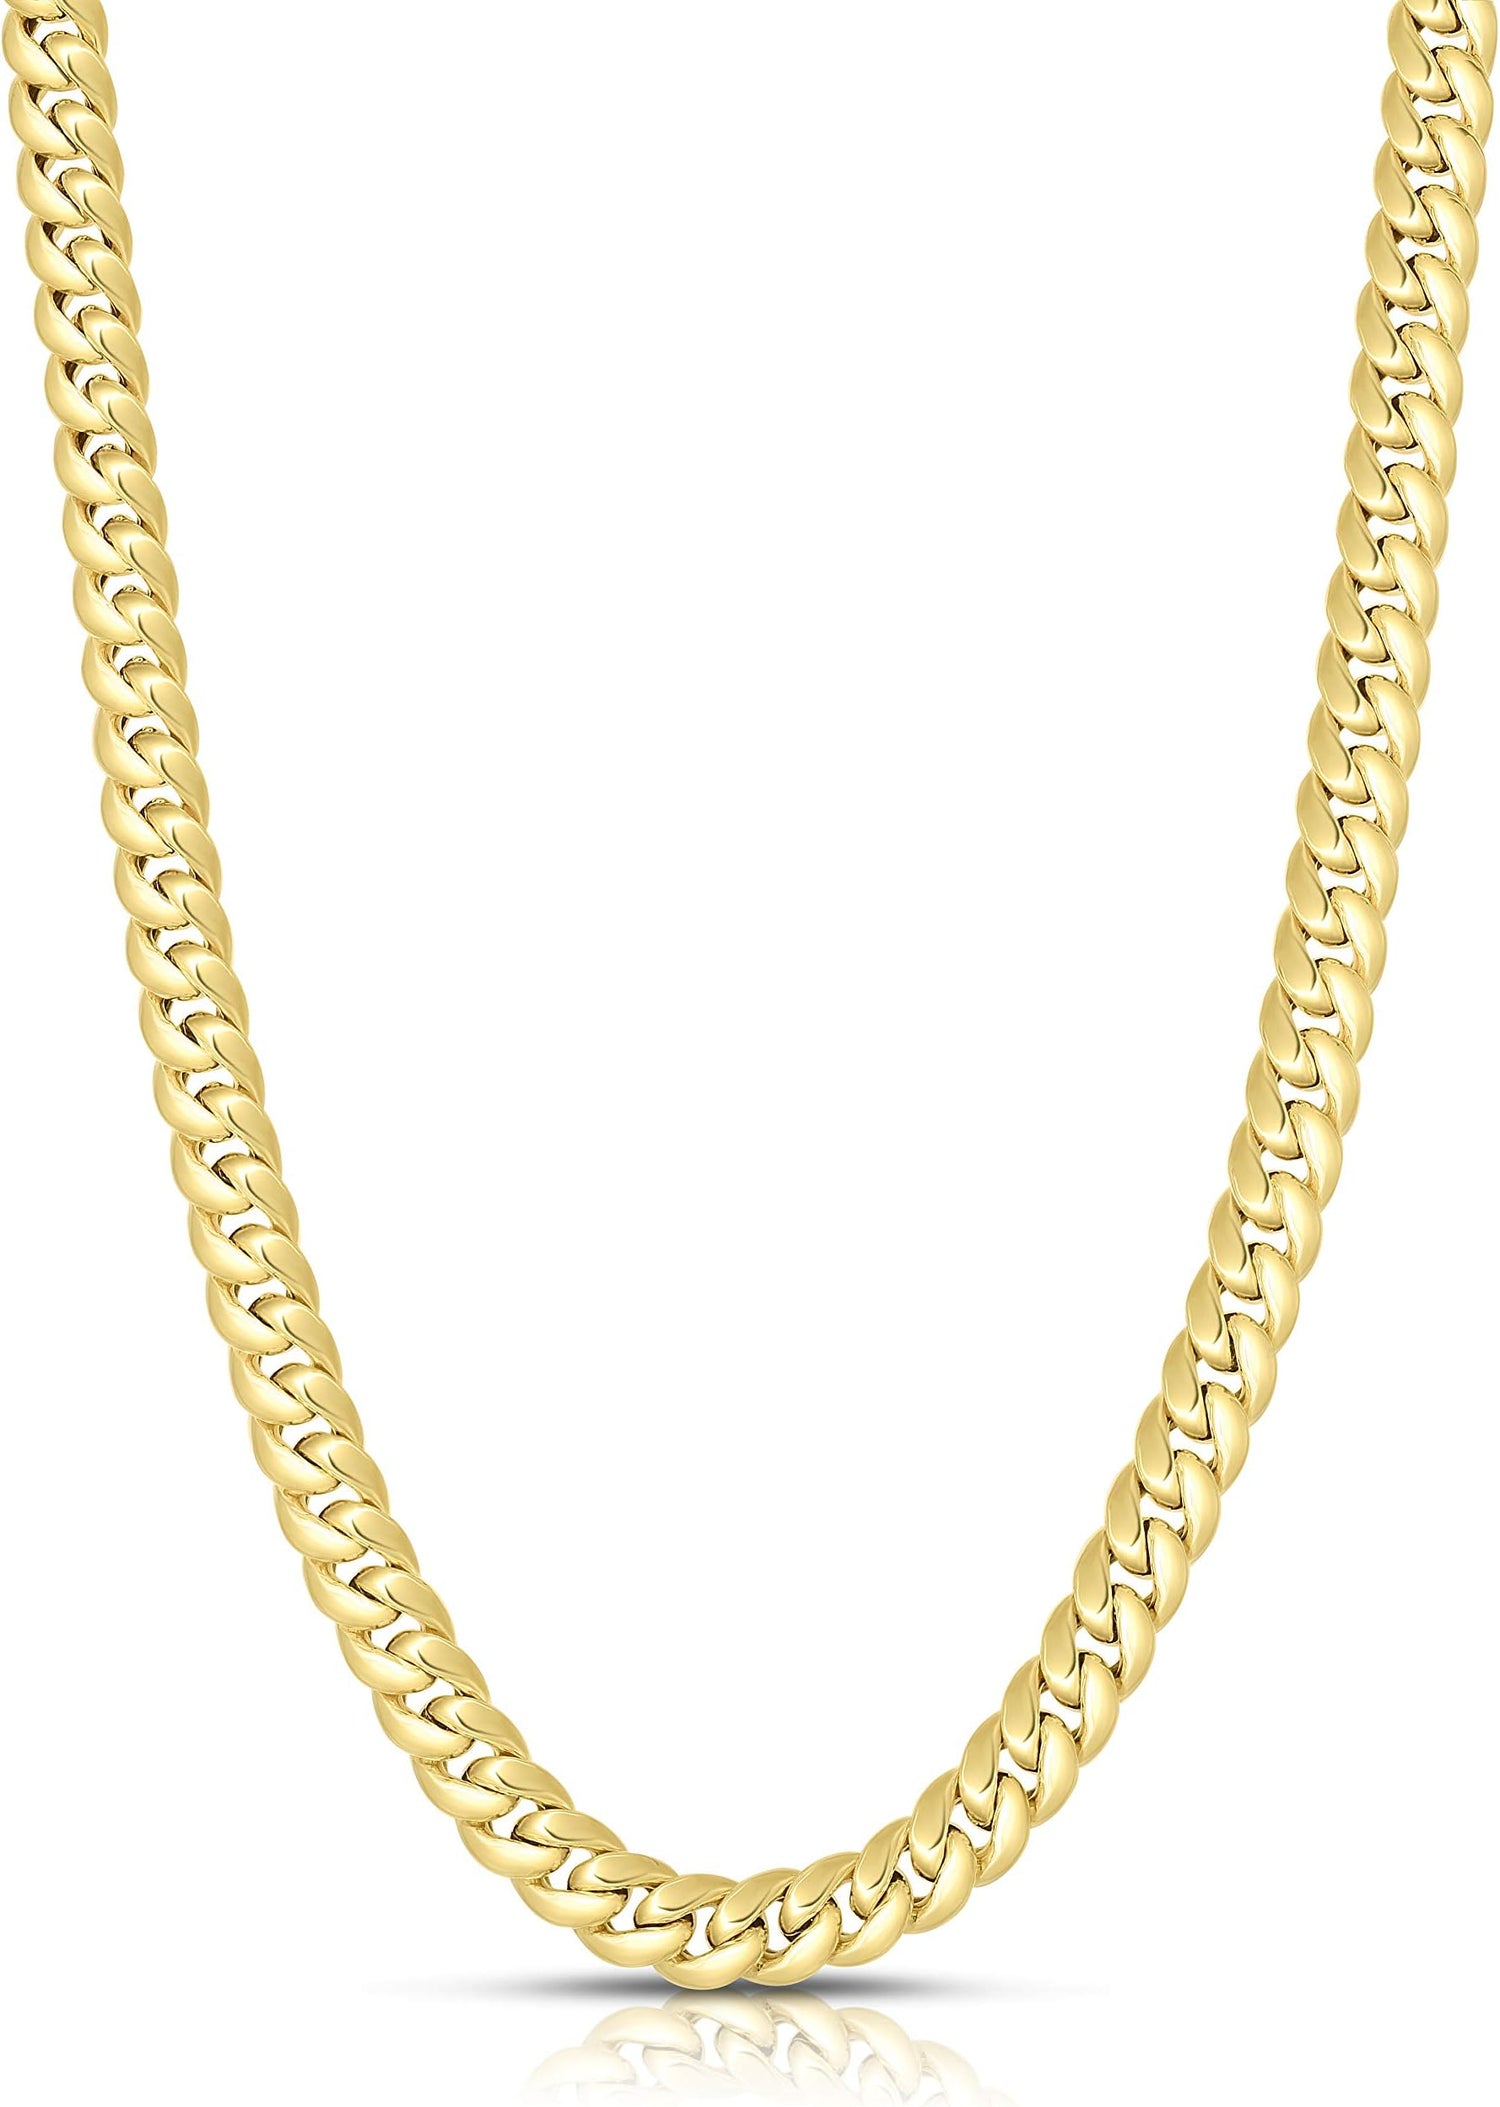 14k Yellow Gold 7.2mm Semi-Lite Miami Cuban Chain Necklace